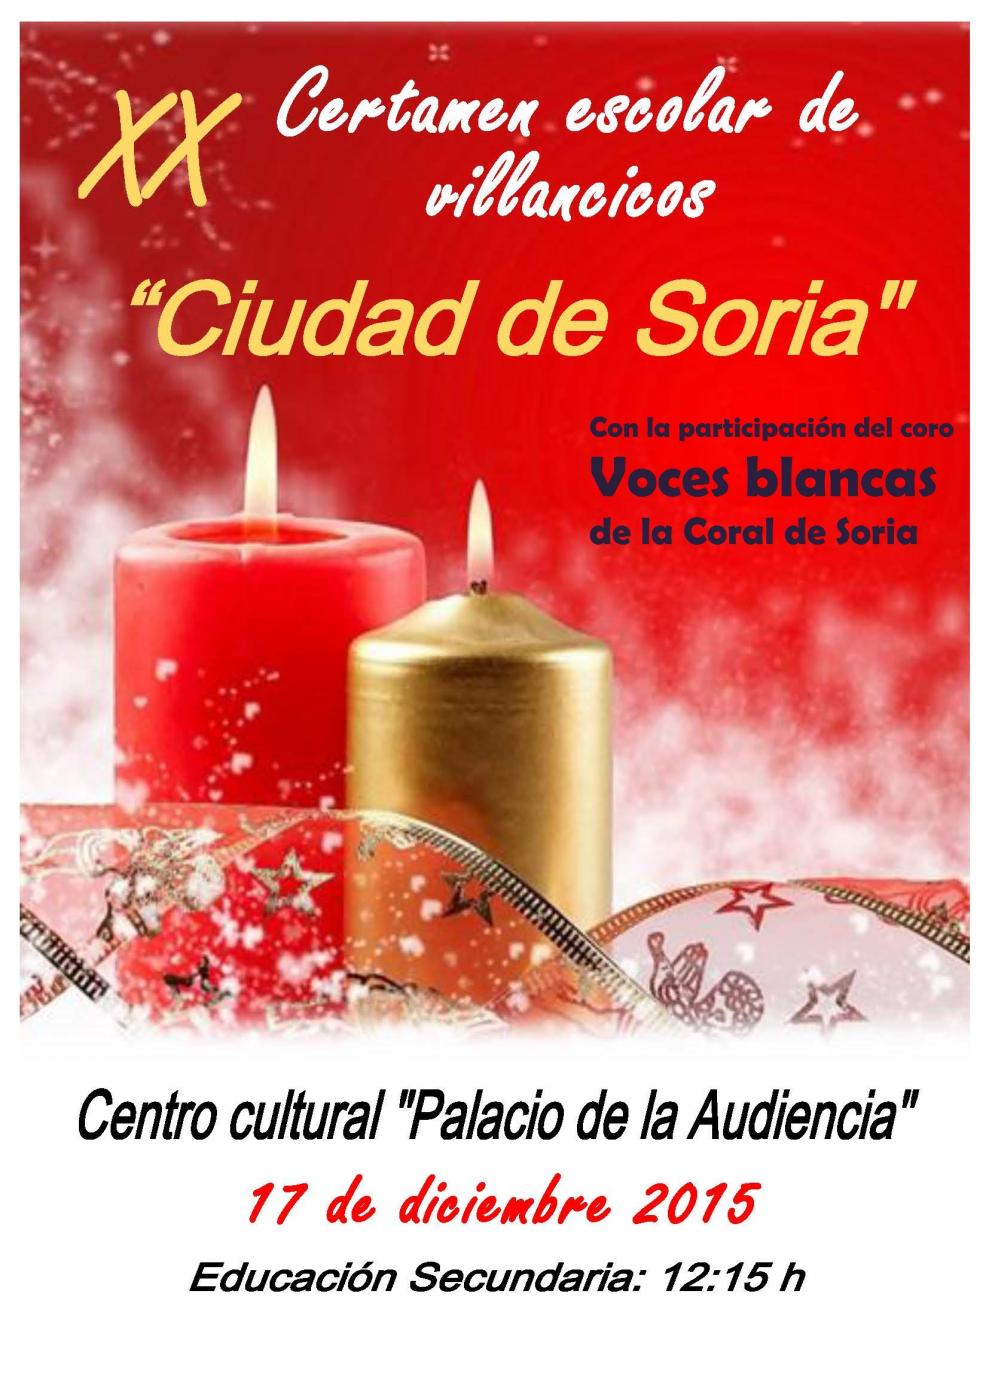 Festival de villancicos de secundaria, con la participación de Voces blancas de la Coral de Soria